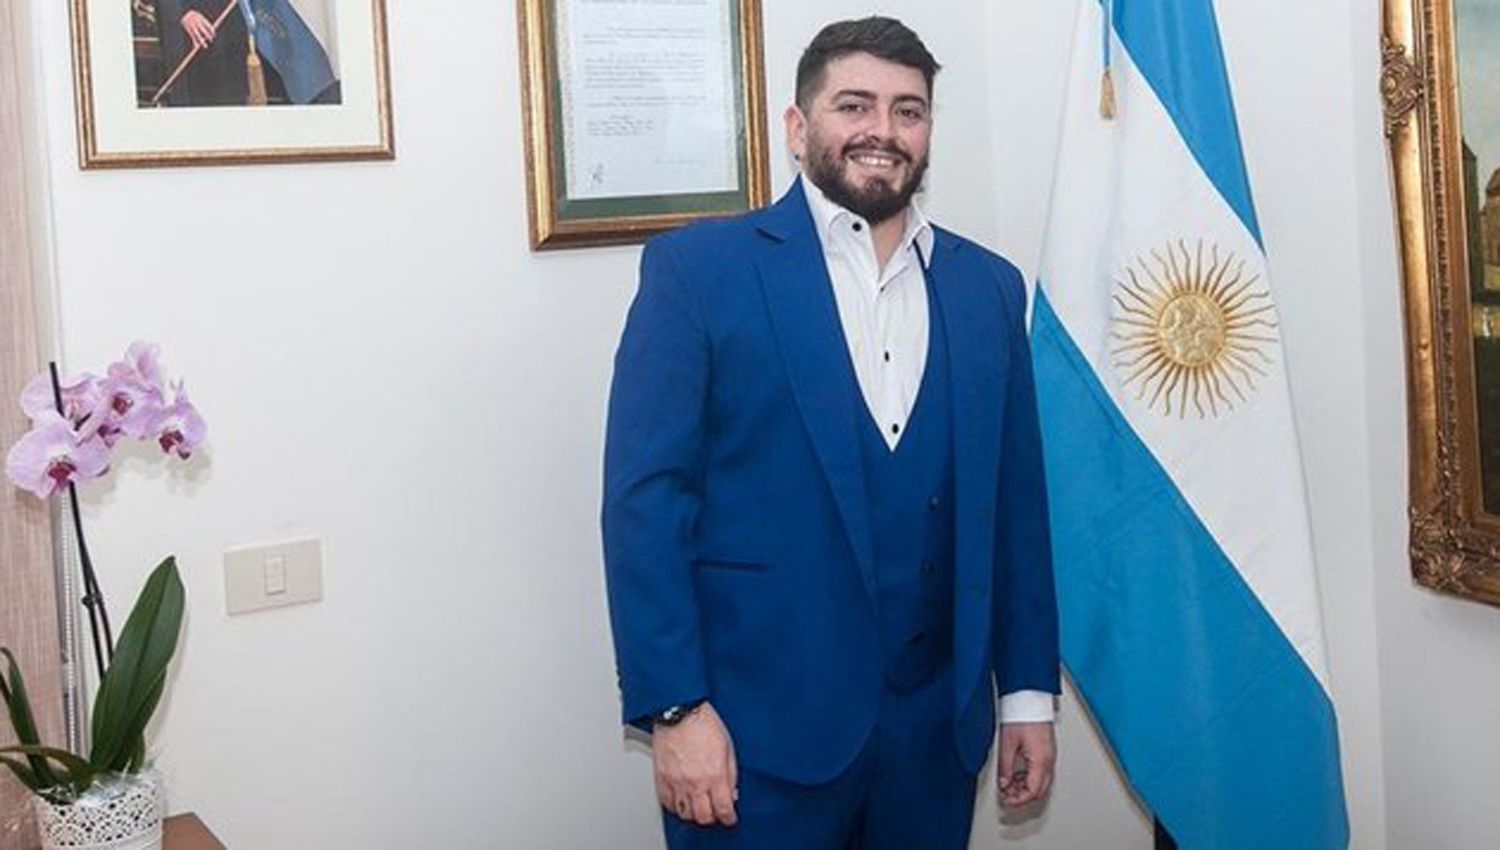 Diego Jr recibió la nacionalidad argentina y Solá recordó a Maradona como “leal con los más débiles”